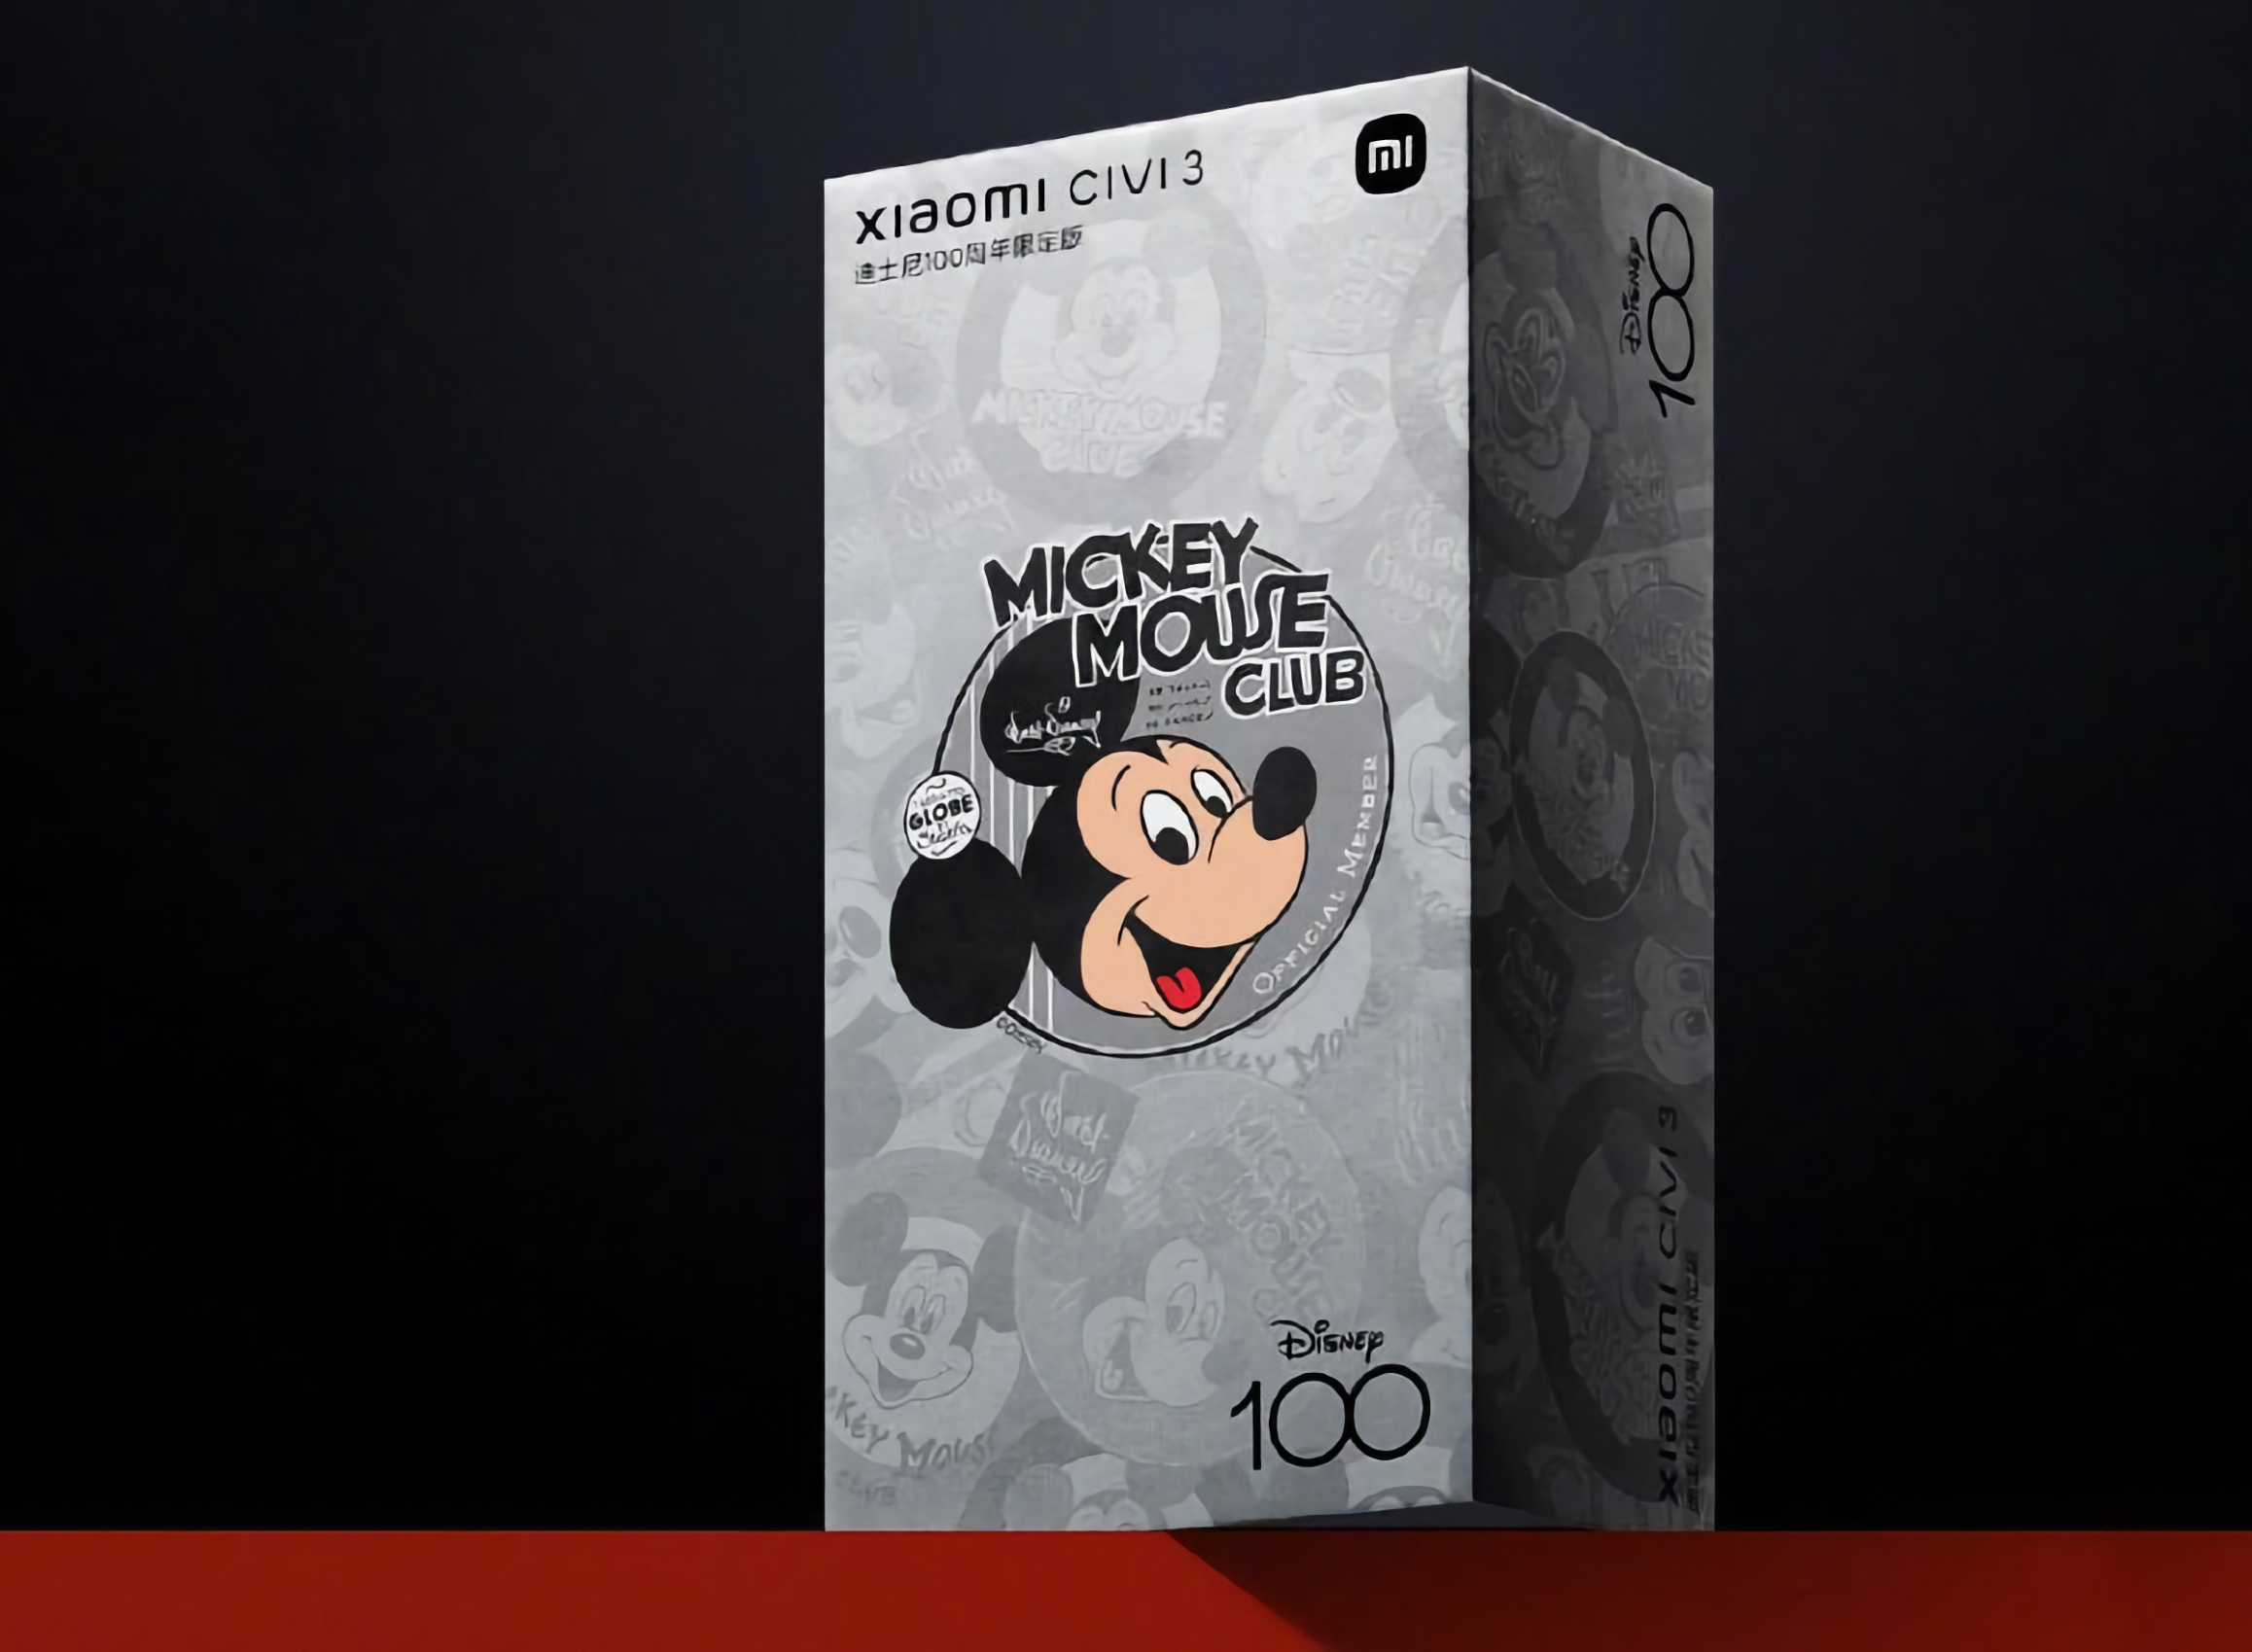 Xiaomi zaprezentuje w czerwcu specjalną wersję smartfona Civi 3, upamiętniającą 100. rocznicę powstania Walt Disney Company